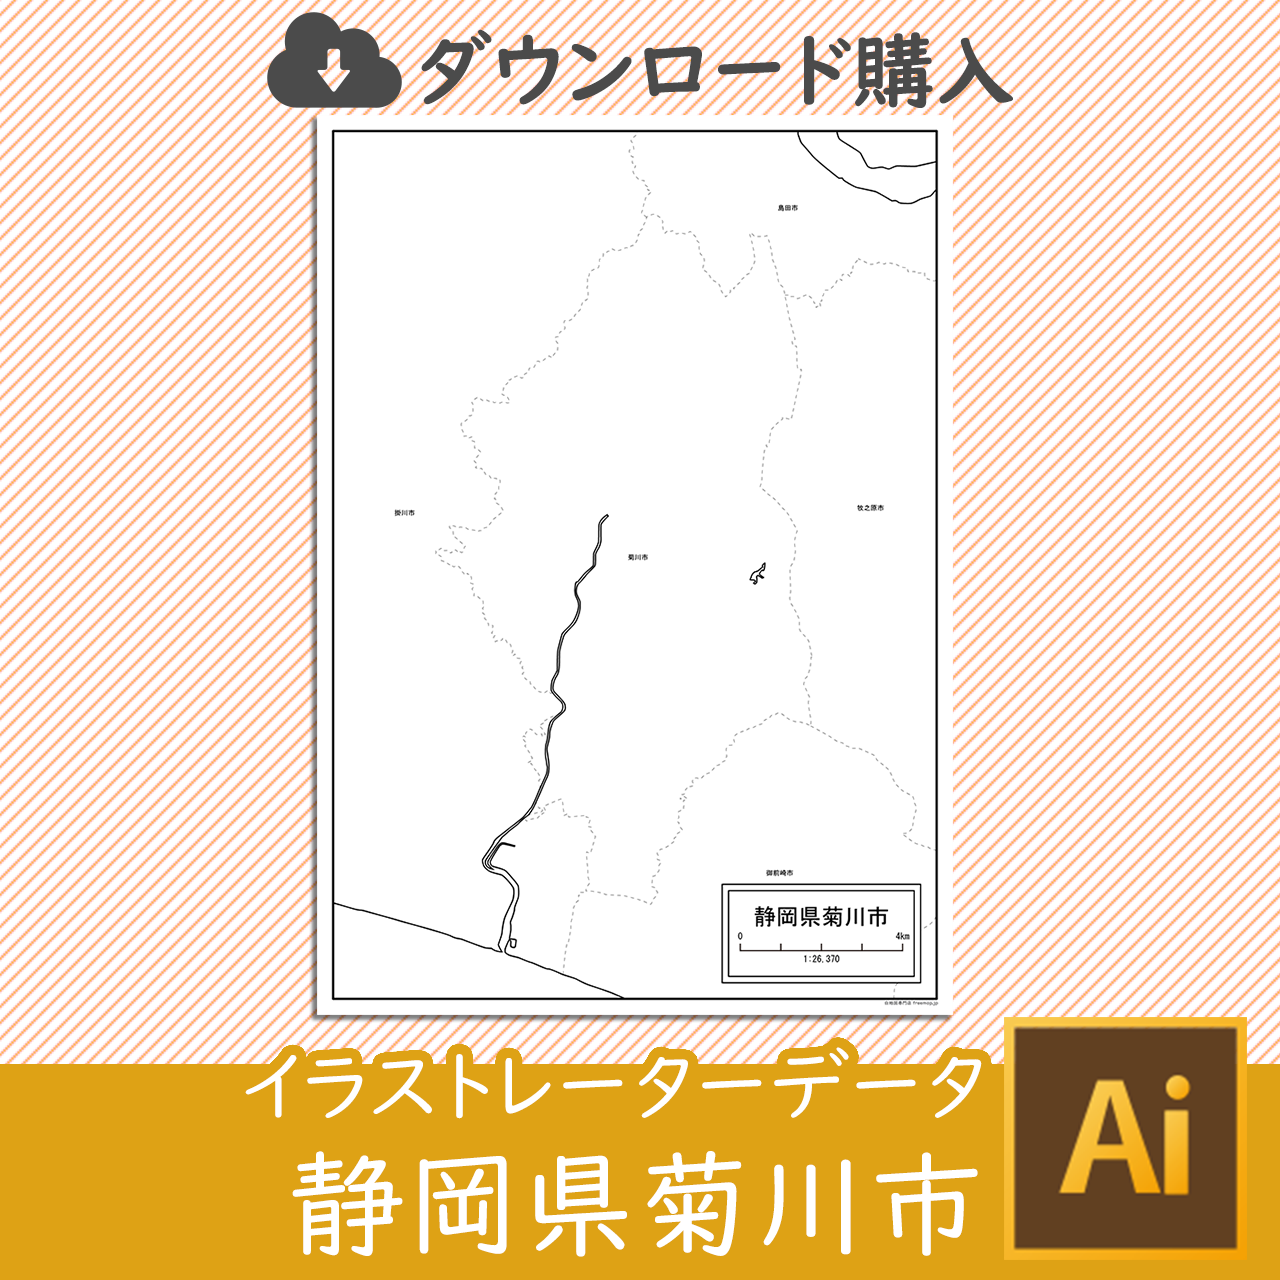 菊川市のaiデータのサムネイル画像